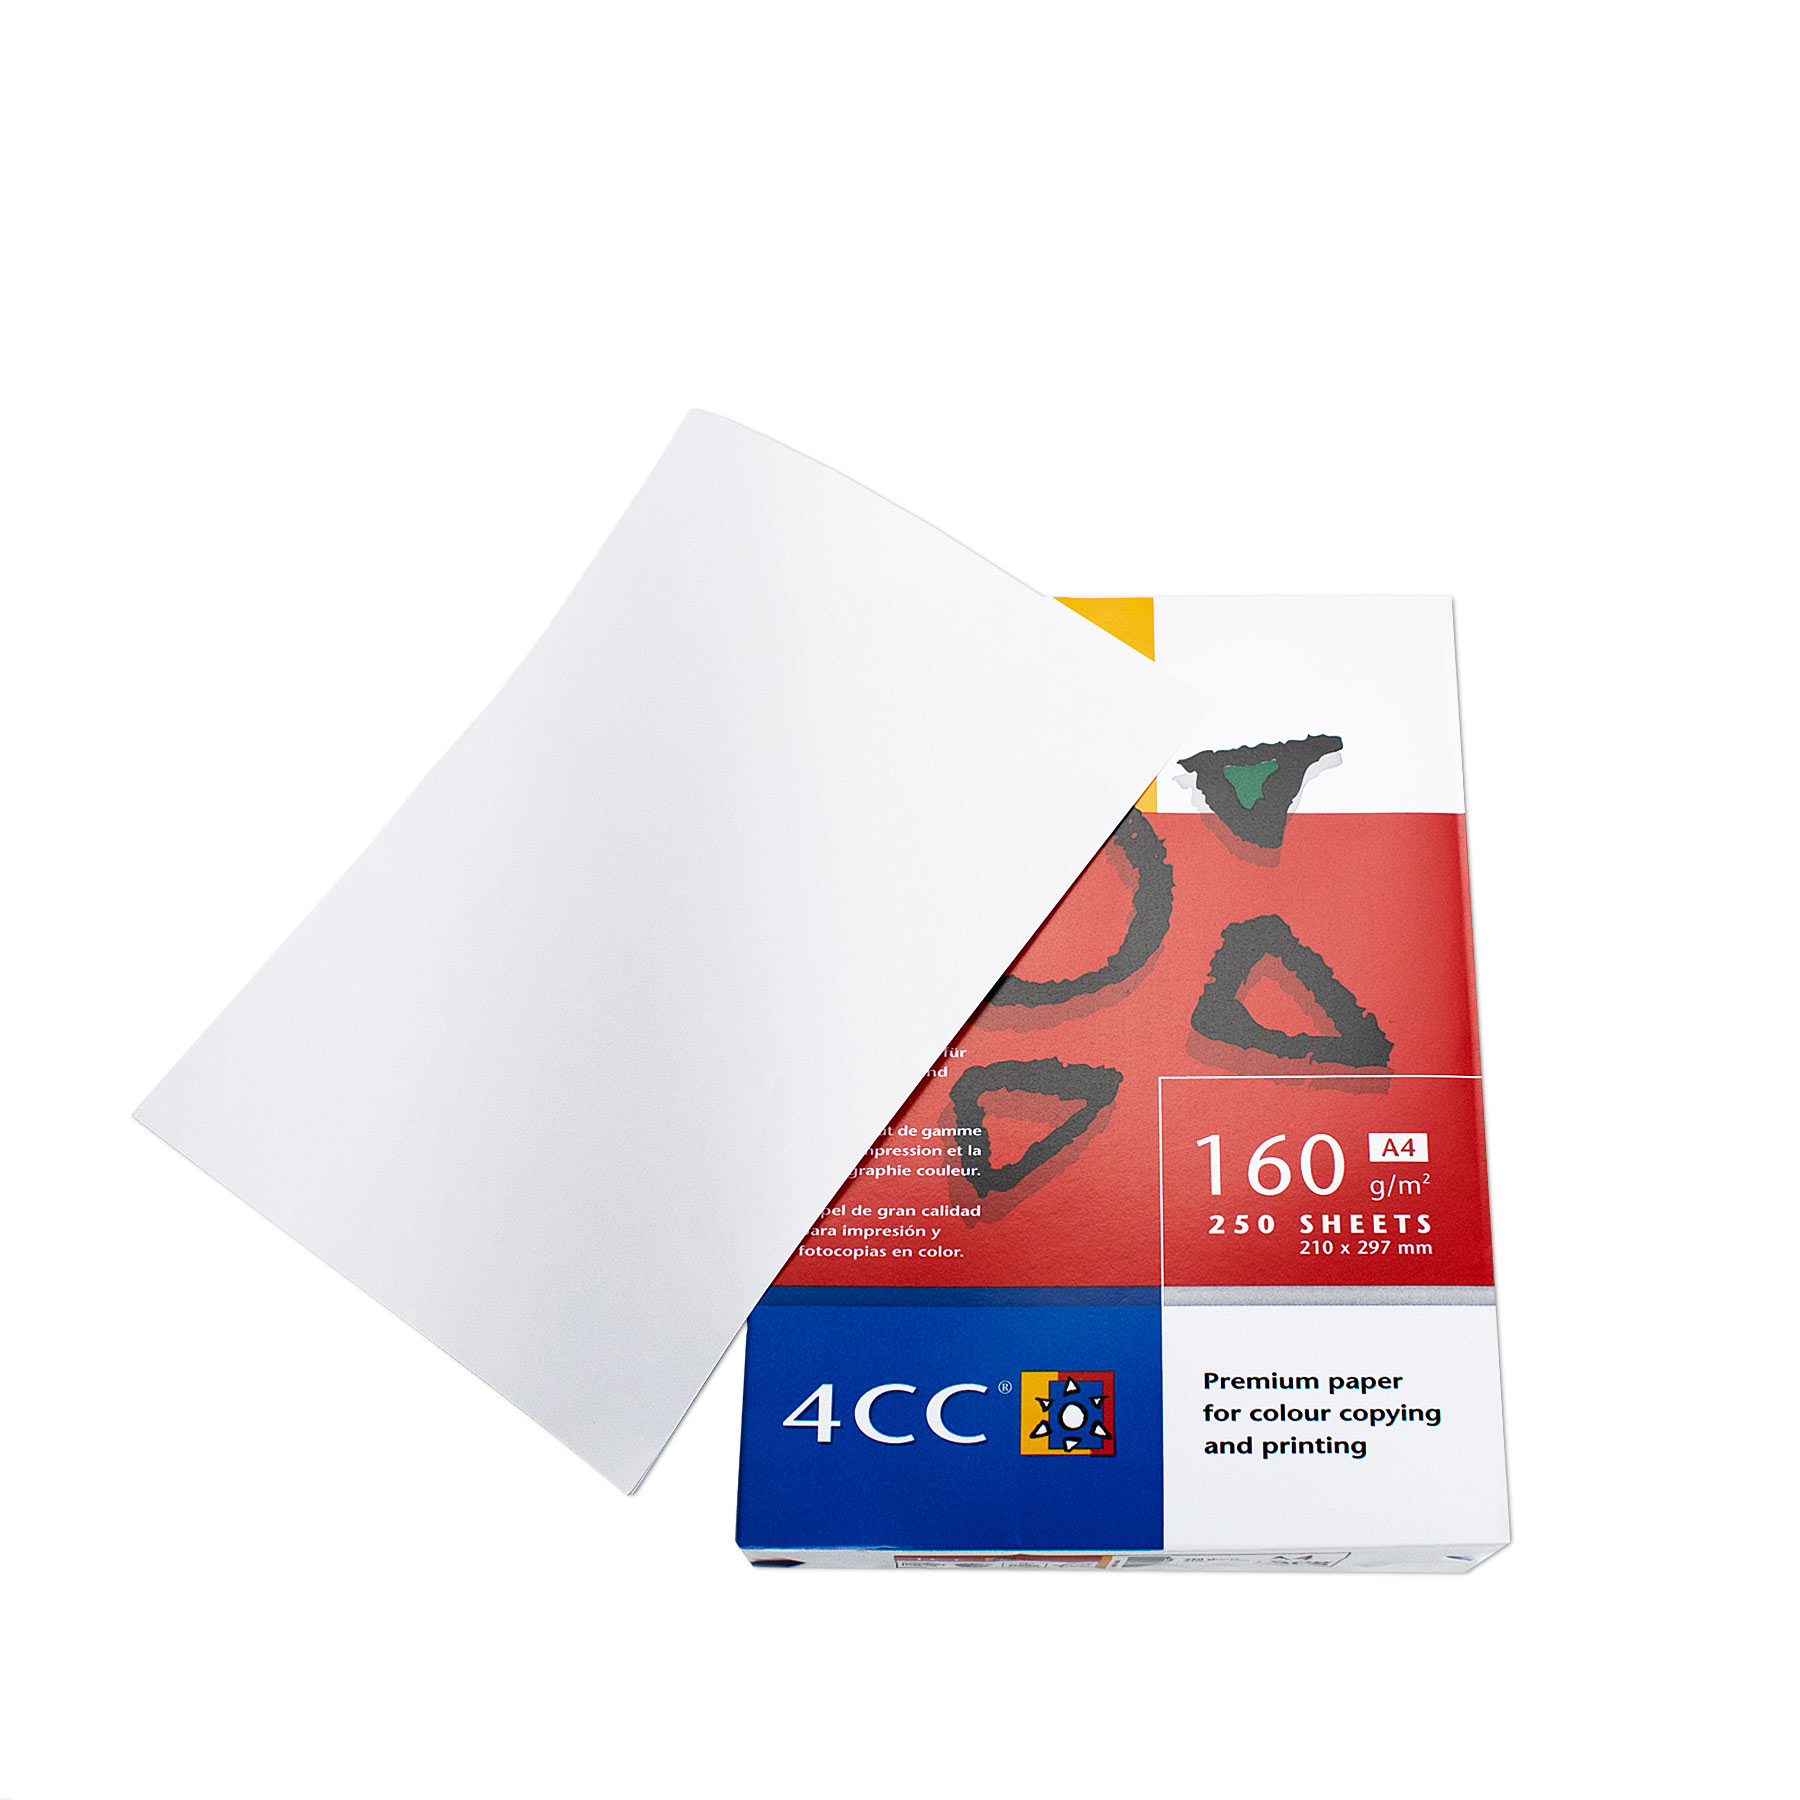 Kopipapir A4 hvid pk. a 250 ark | Scanlux Packaging